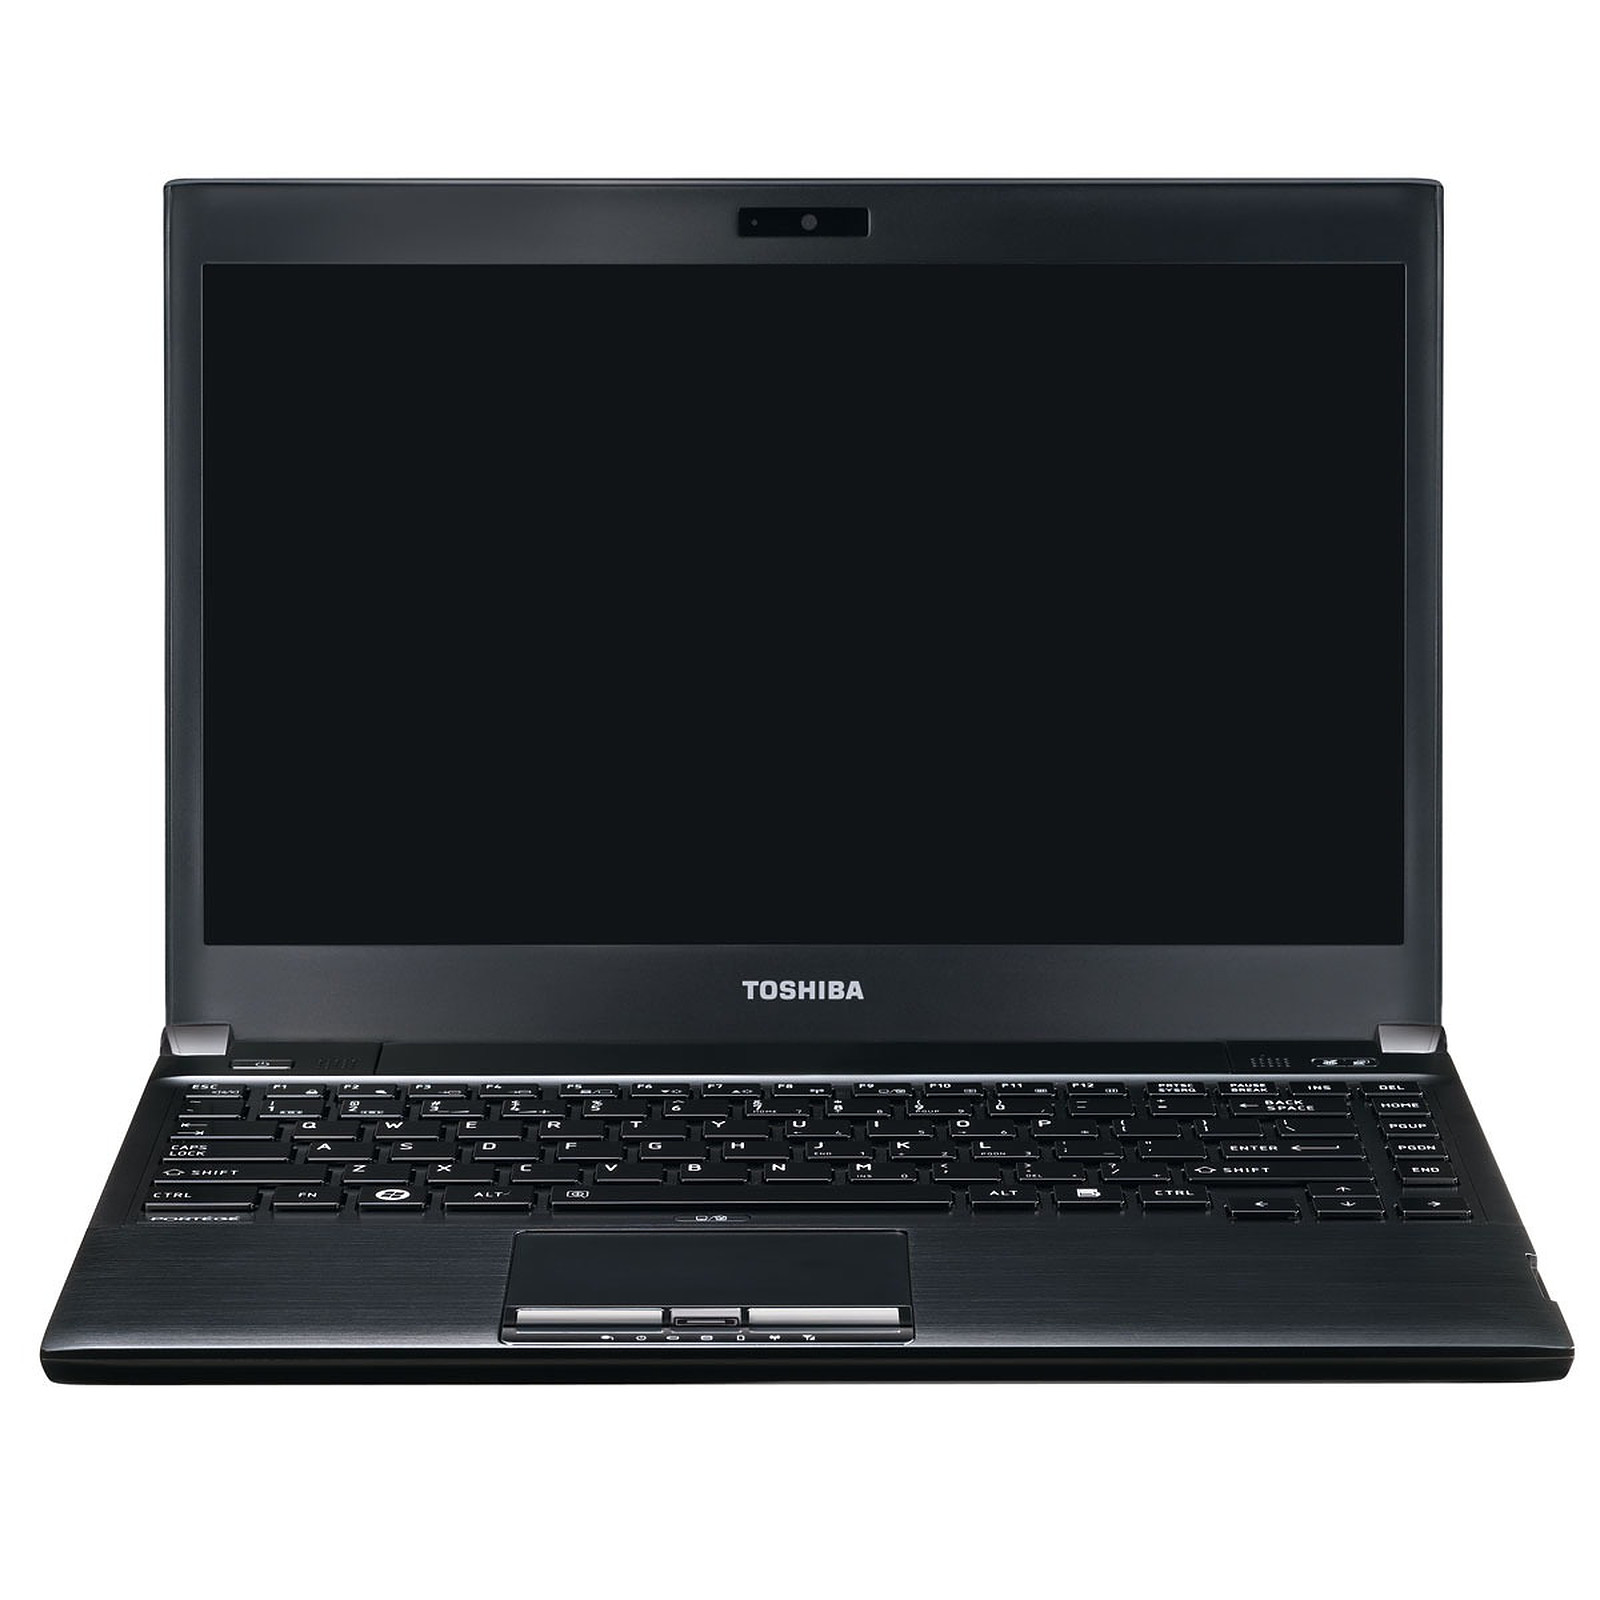 Laptop Toshiba Portege R700-181, Intel Core i3-370M 2.40GHz, 4GB DDR3, 500GB SATA, DVD-RW, 13.3 Inch, Webcam